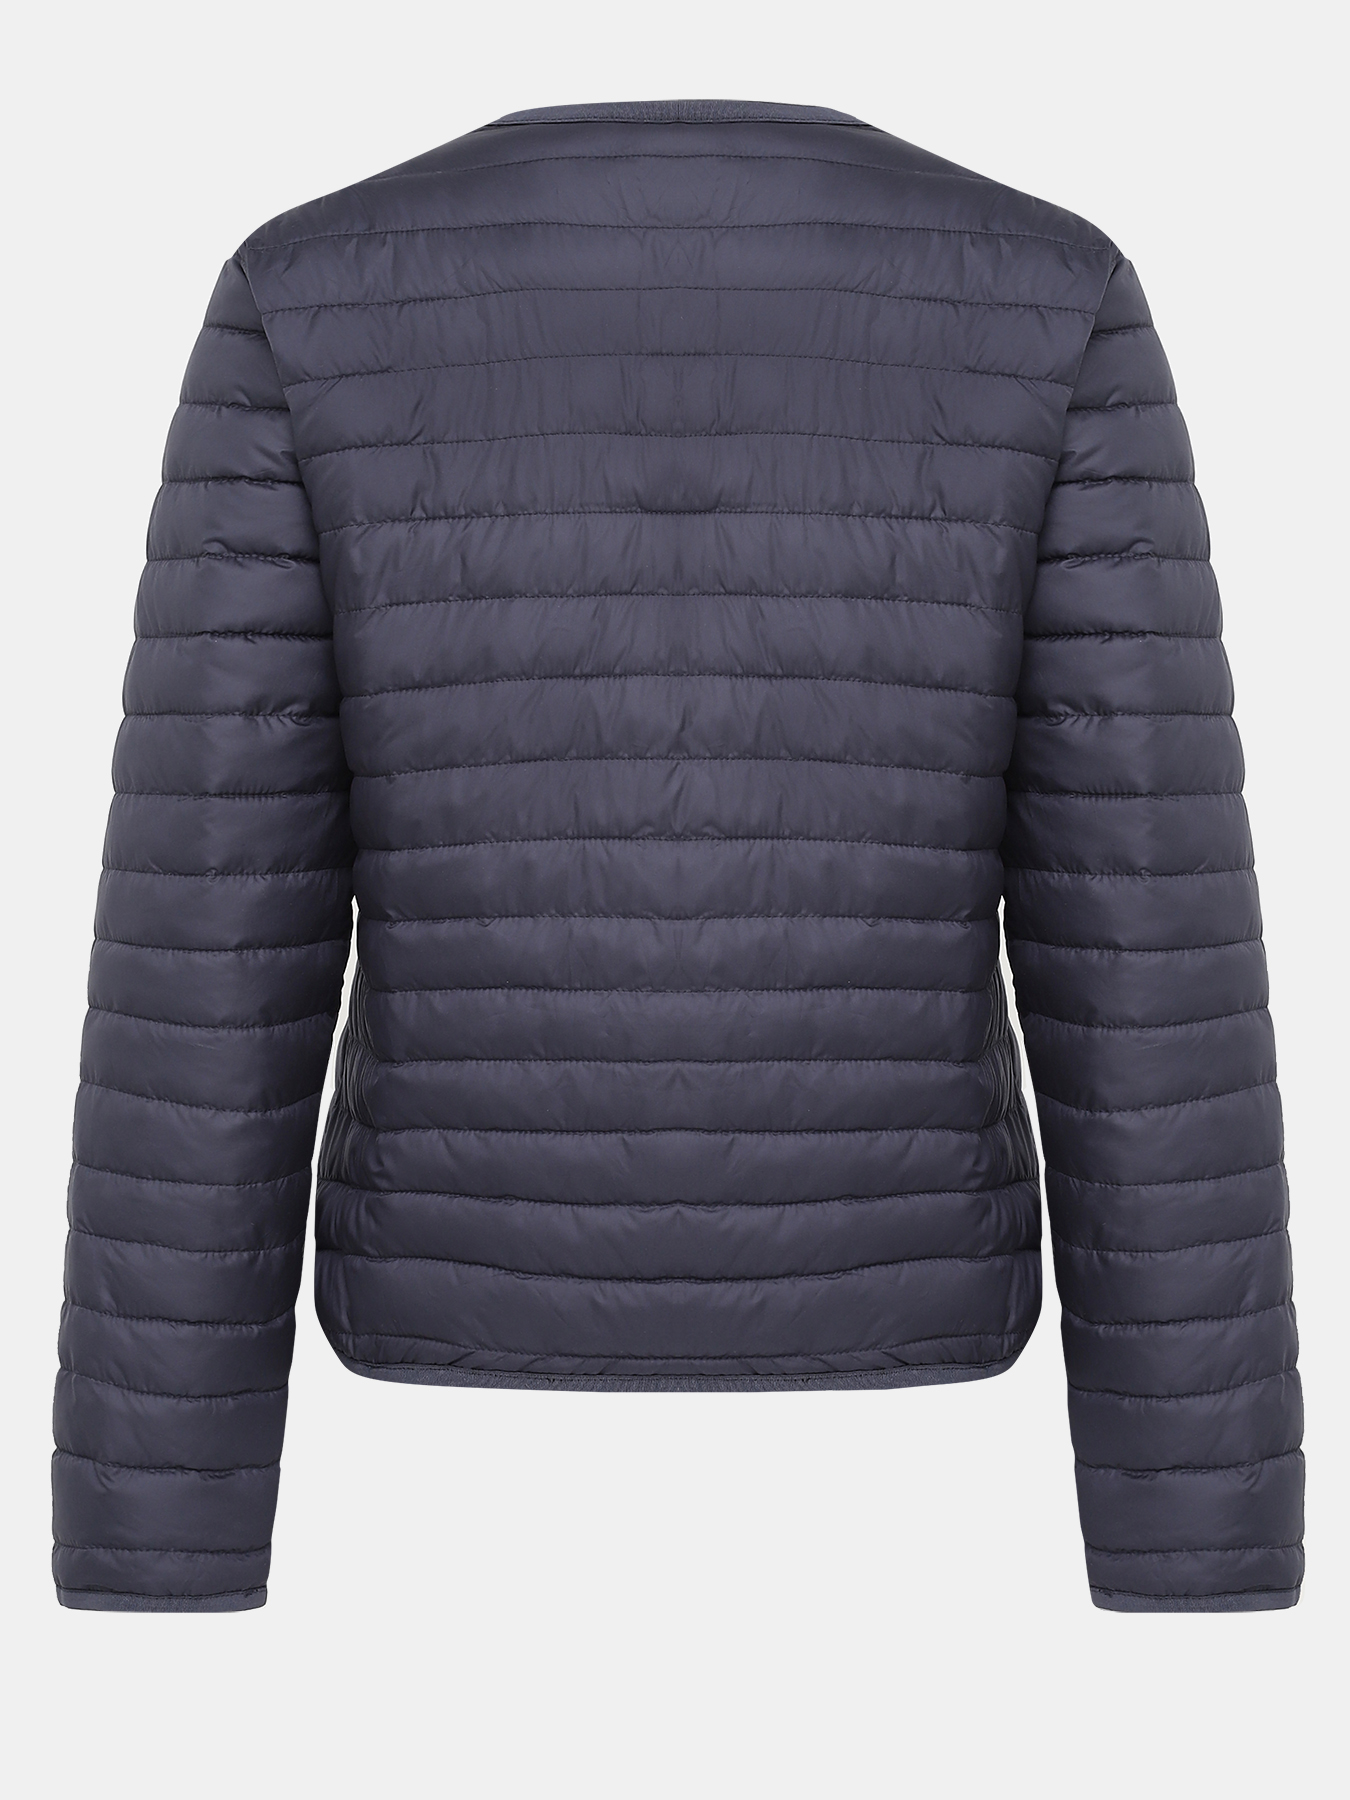 Двустороняя куртка Pennyblack 408451-022, цвет мультиколор, размер 44 - фото 5